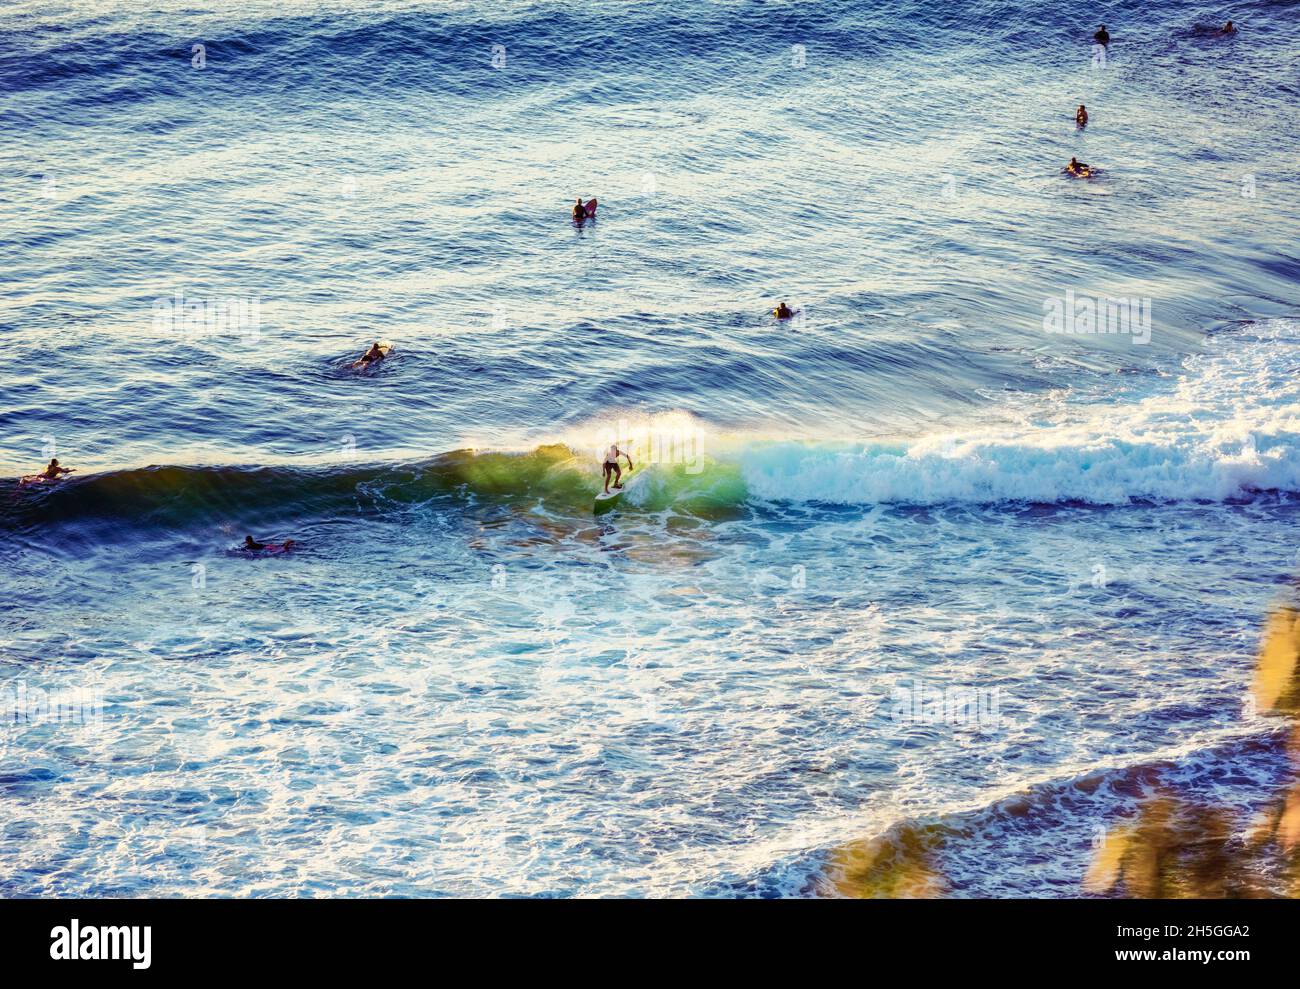 Les surfeurs attrapent des vagues le long de la côte de Maui à Surf's Up ; la baie de la ville de Macua, Maui, hawaii, États-Unis d'Amérique Banque D'Images